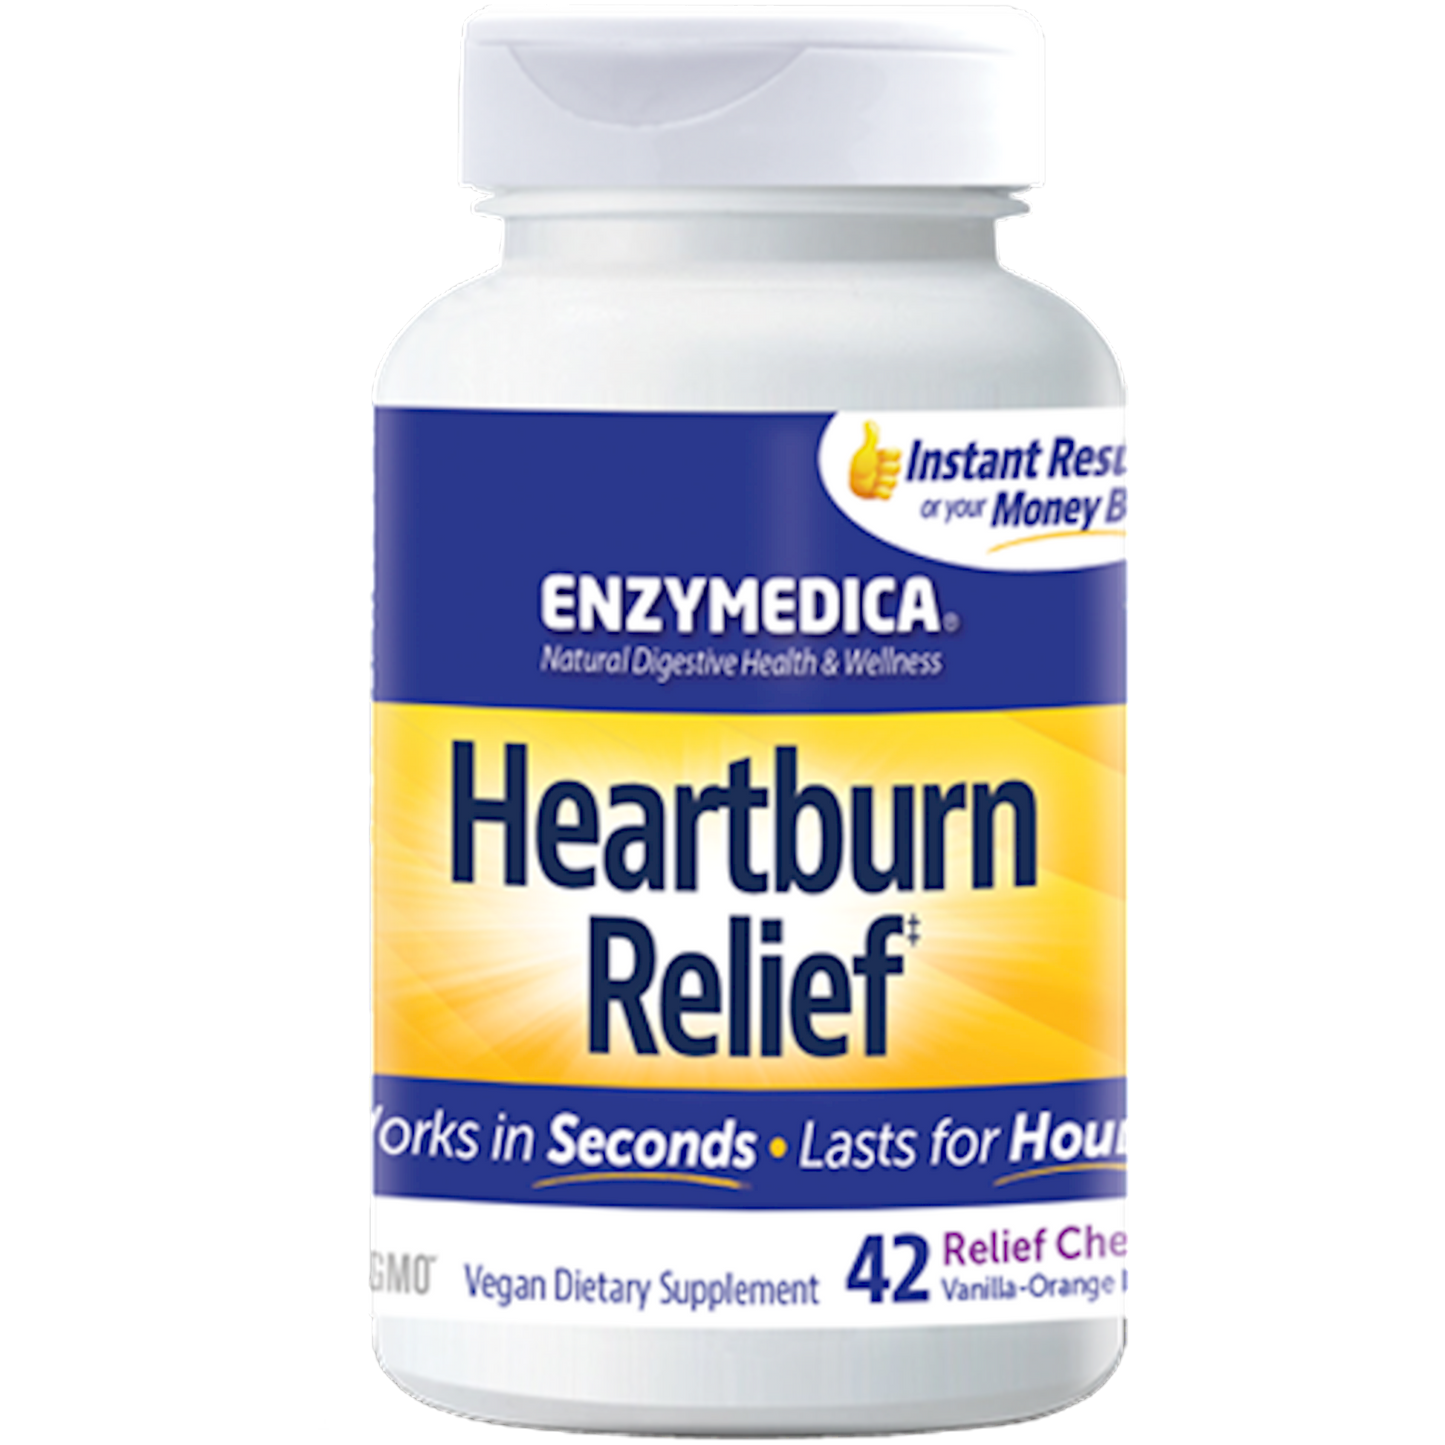 Heartburn Relief